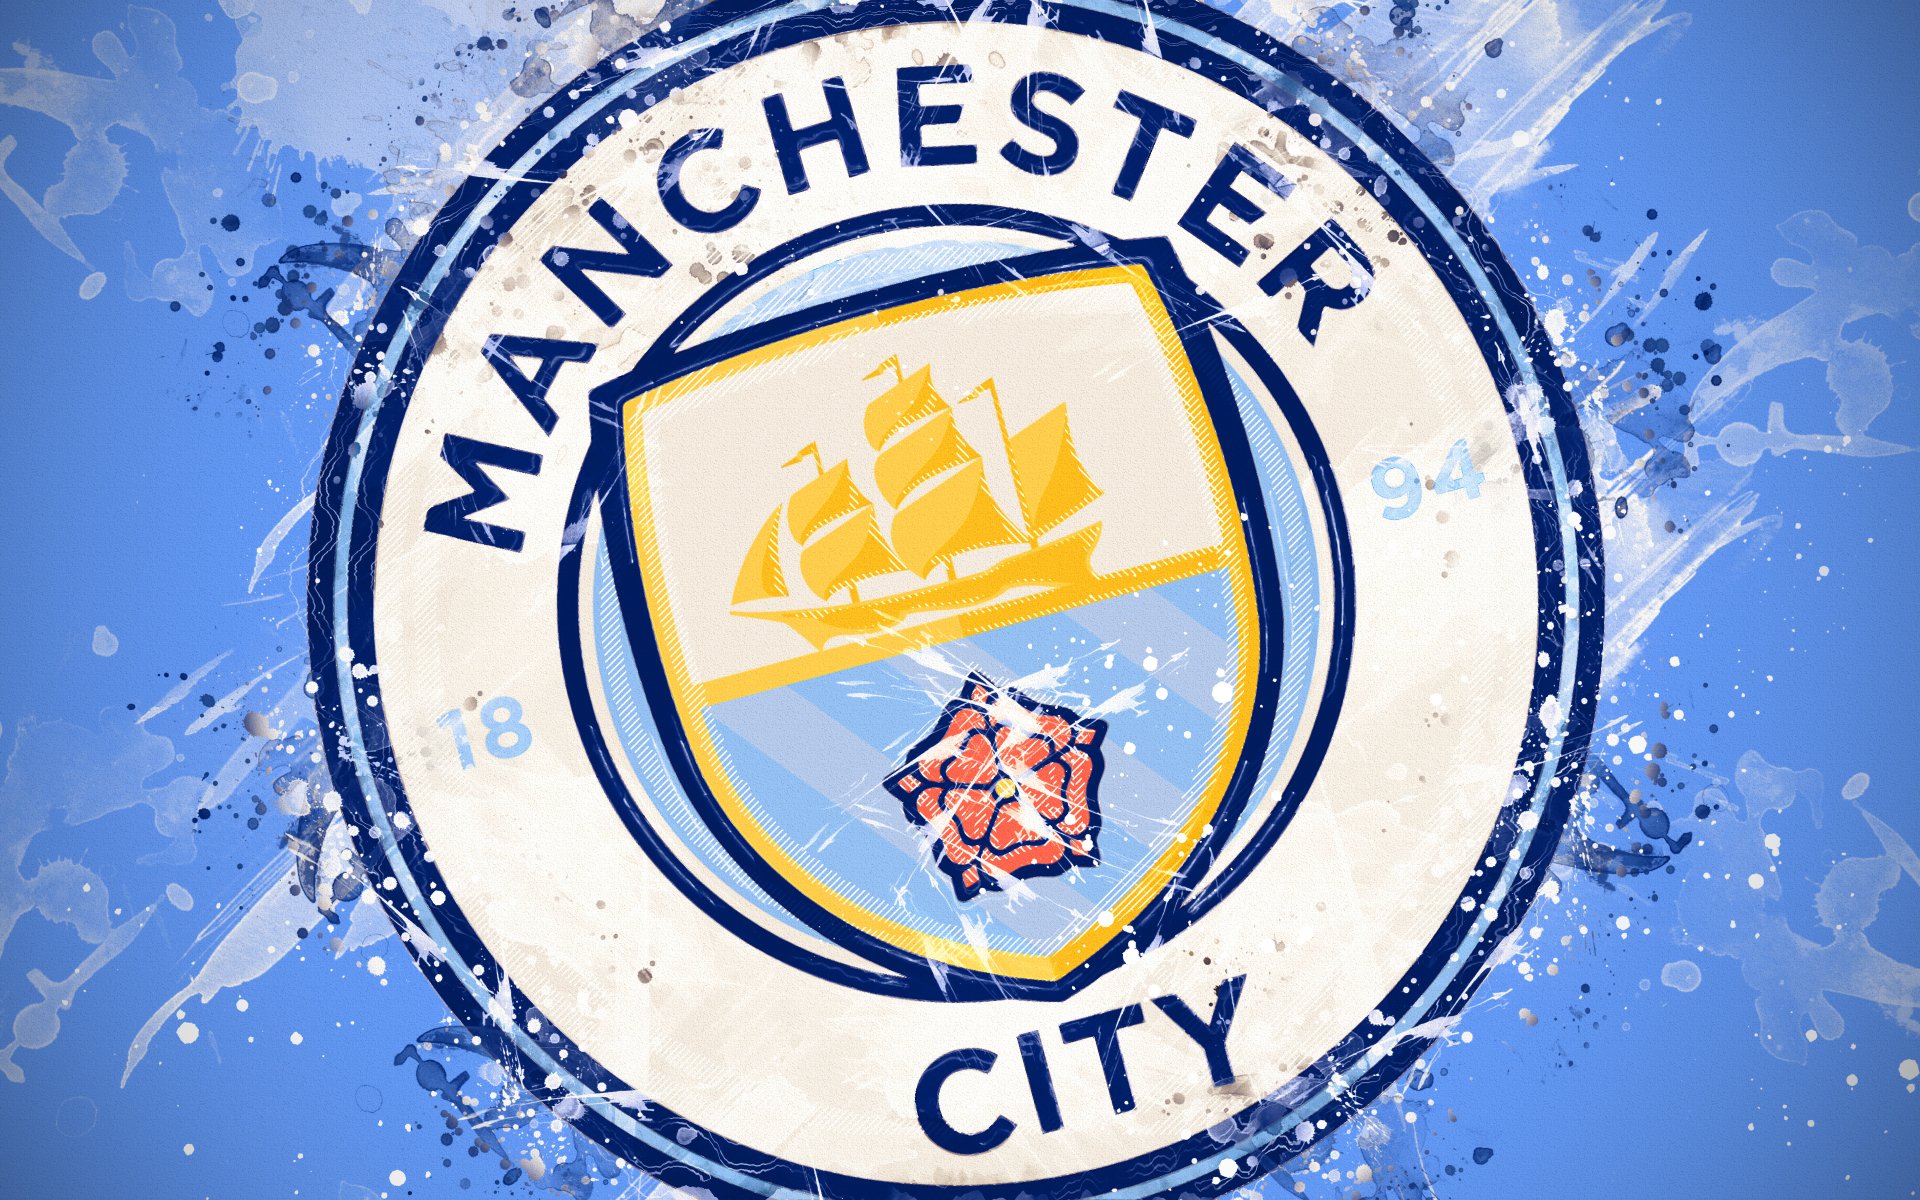 Manchester City Logo - Thương hiệu bóng đá huyền thoại với thiết kế slogan cực kỳ ấn tượng. Hãy tìm hiểu ngay để hiểu thêm về những giá trị của thành phố Manchester, về tinh thần đối đầu và can đảm của đội bóng này.